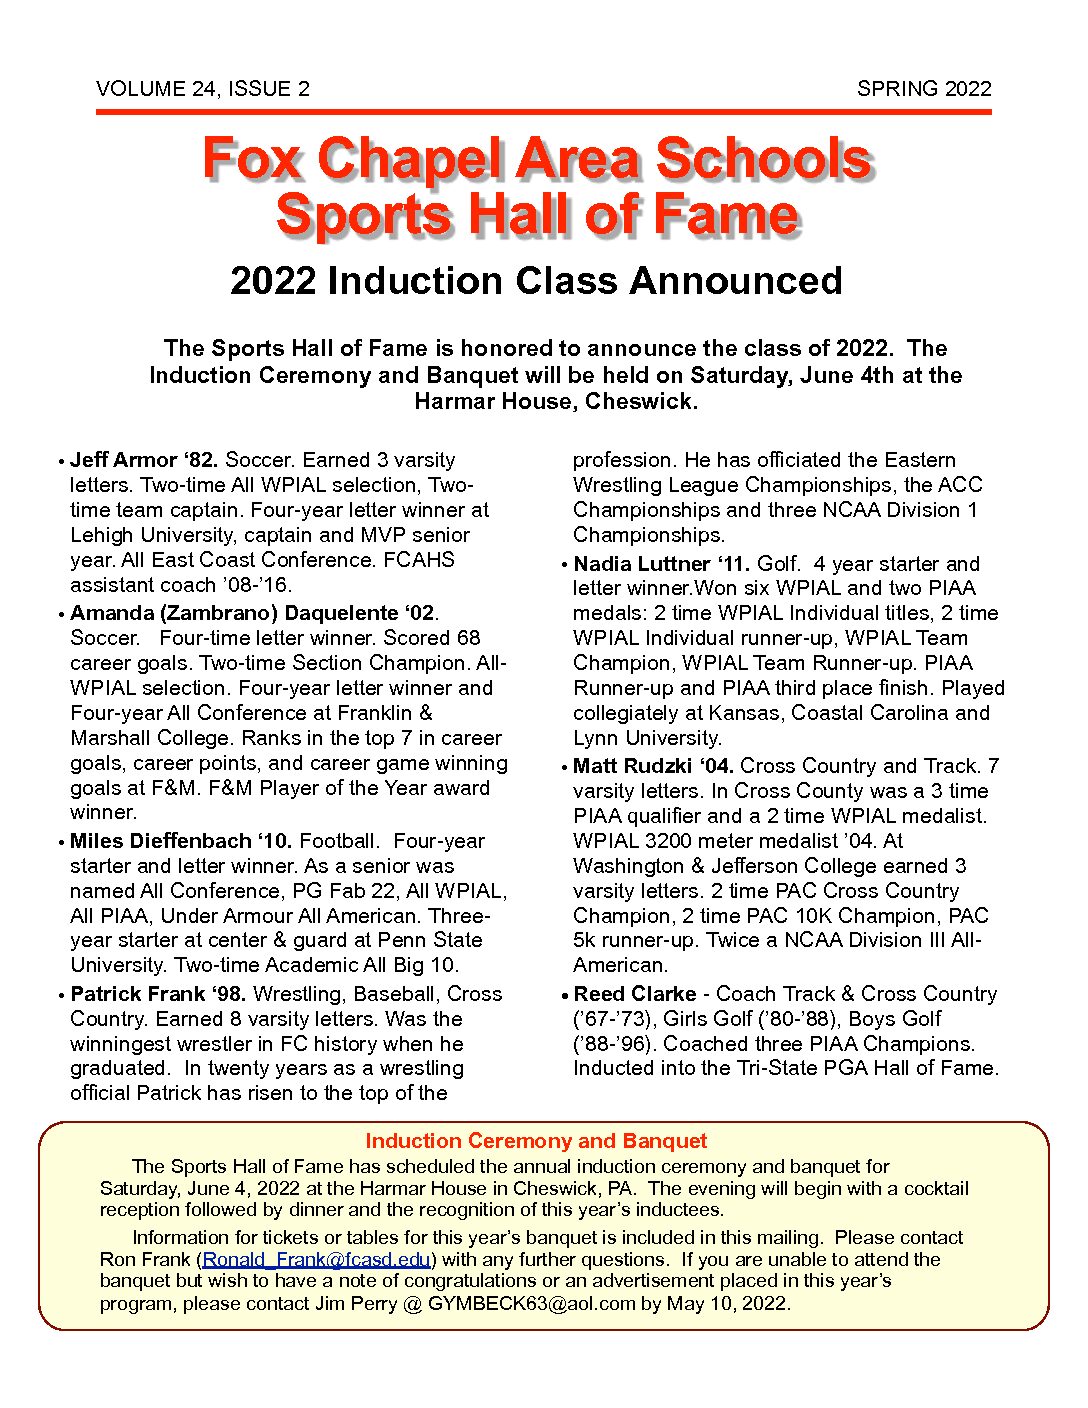 Times, PDF, Sports Leagues